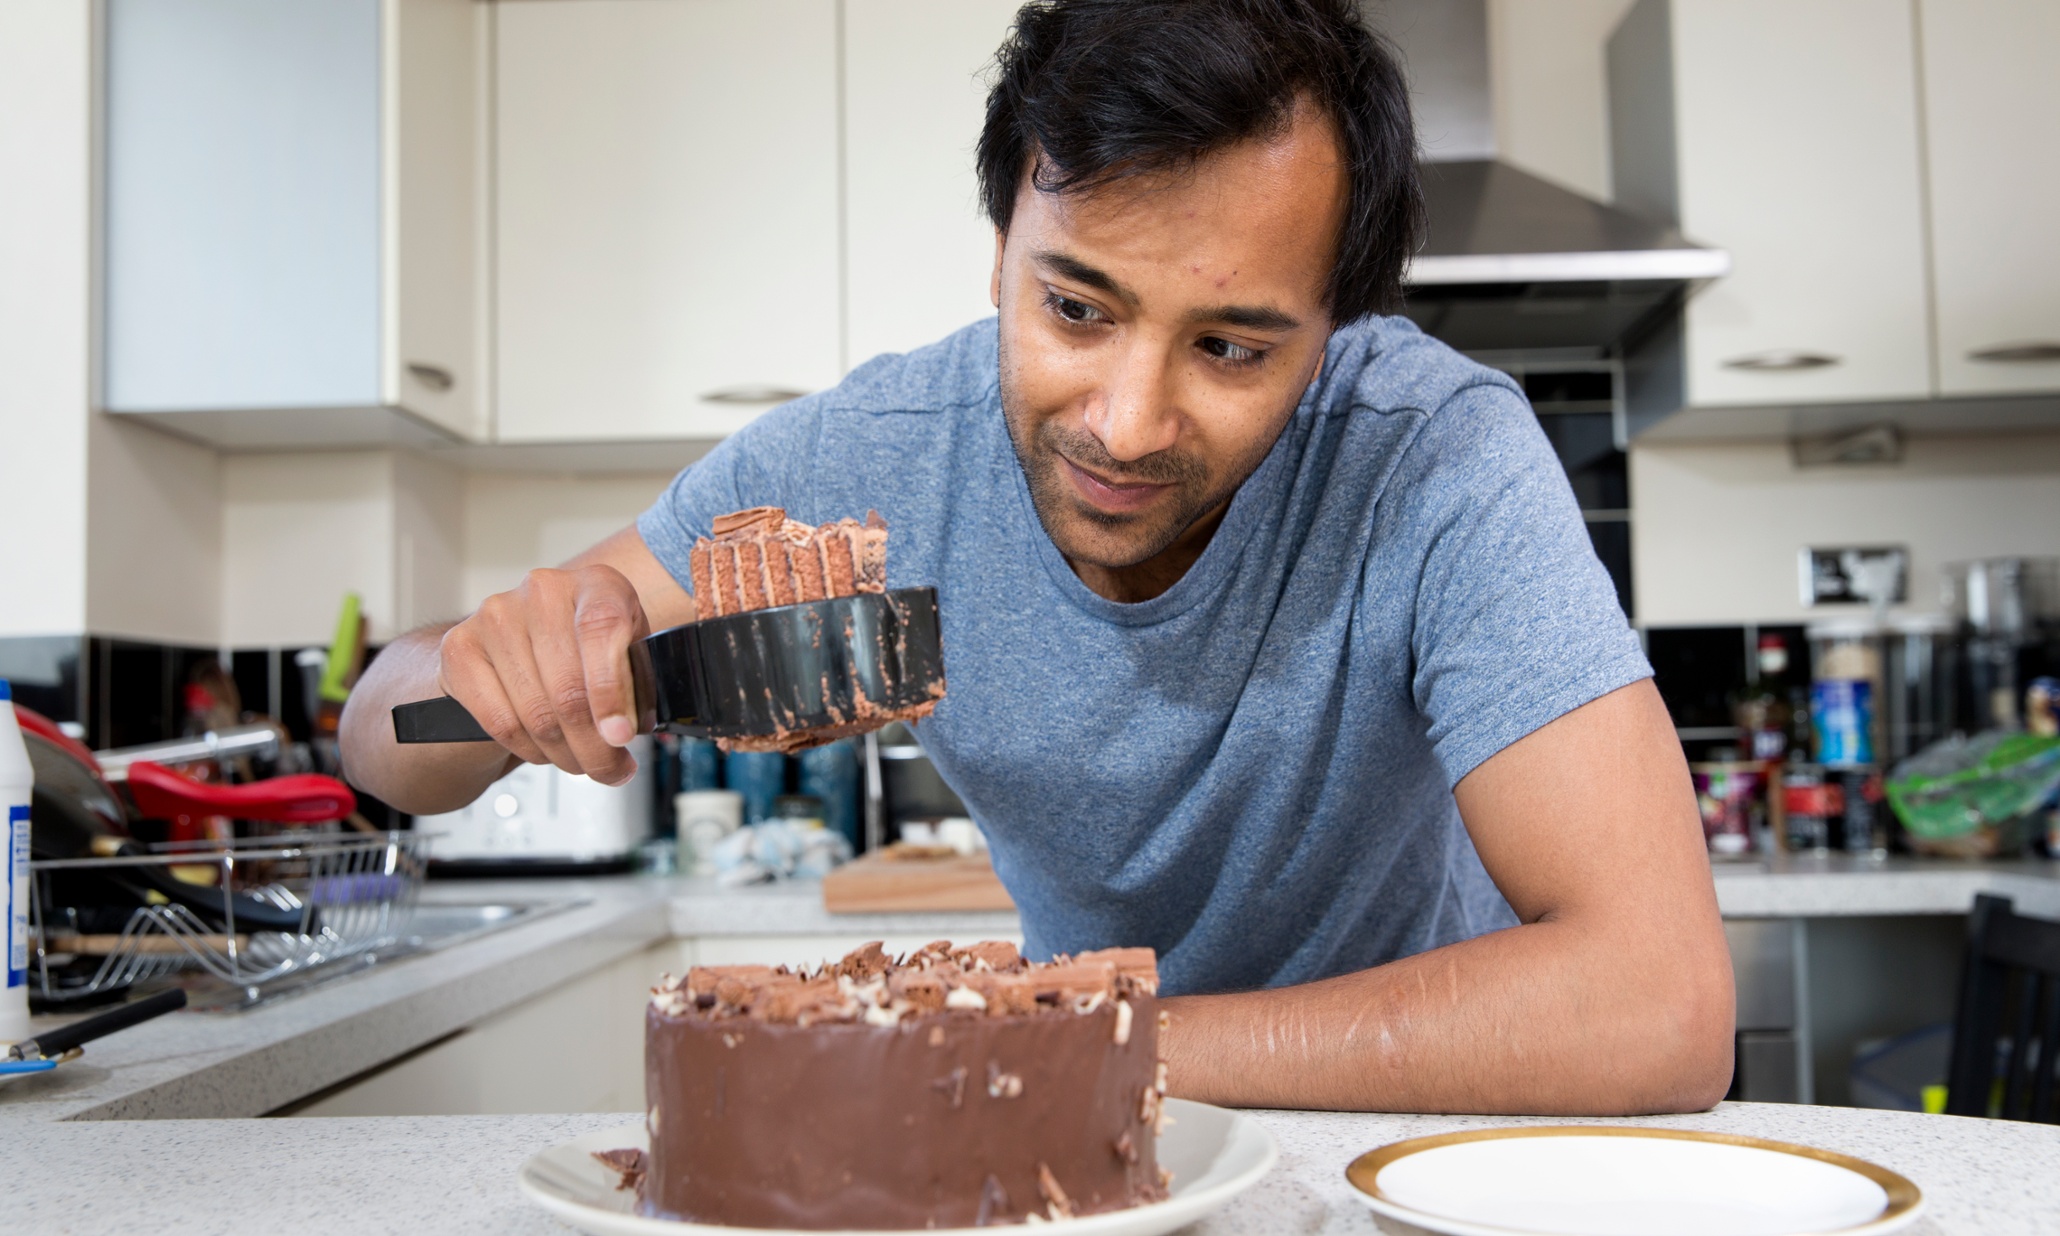 Rhik Samadder tries out the cake server